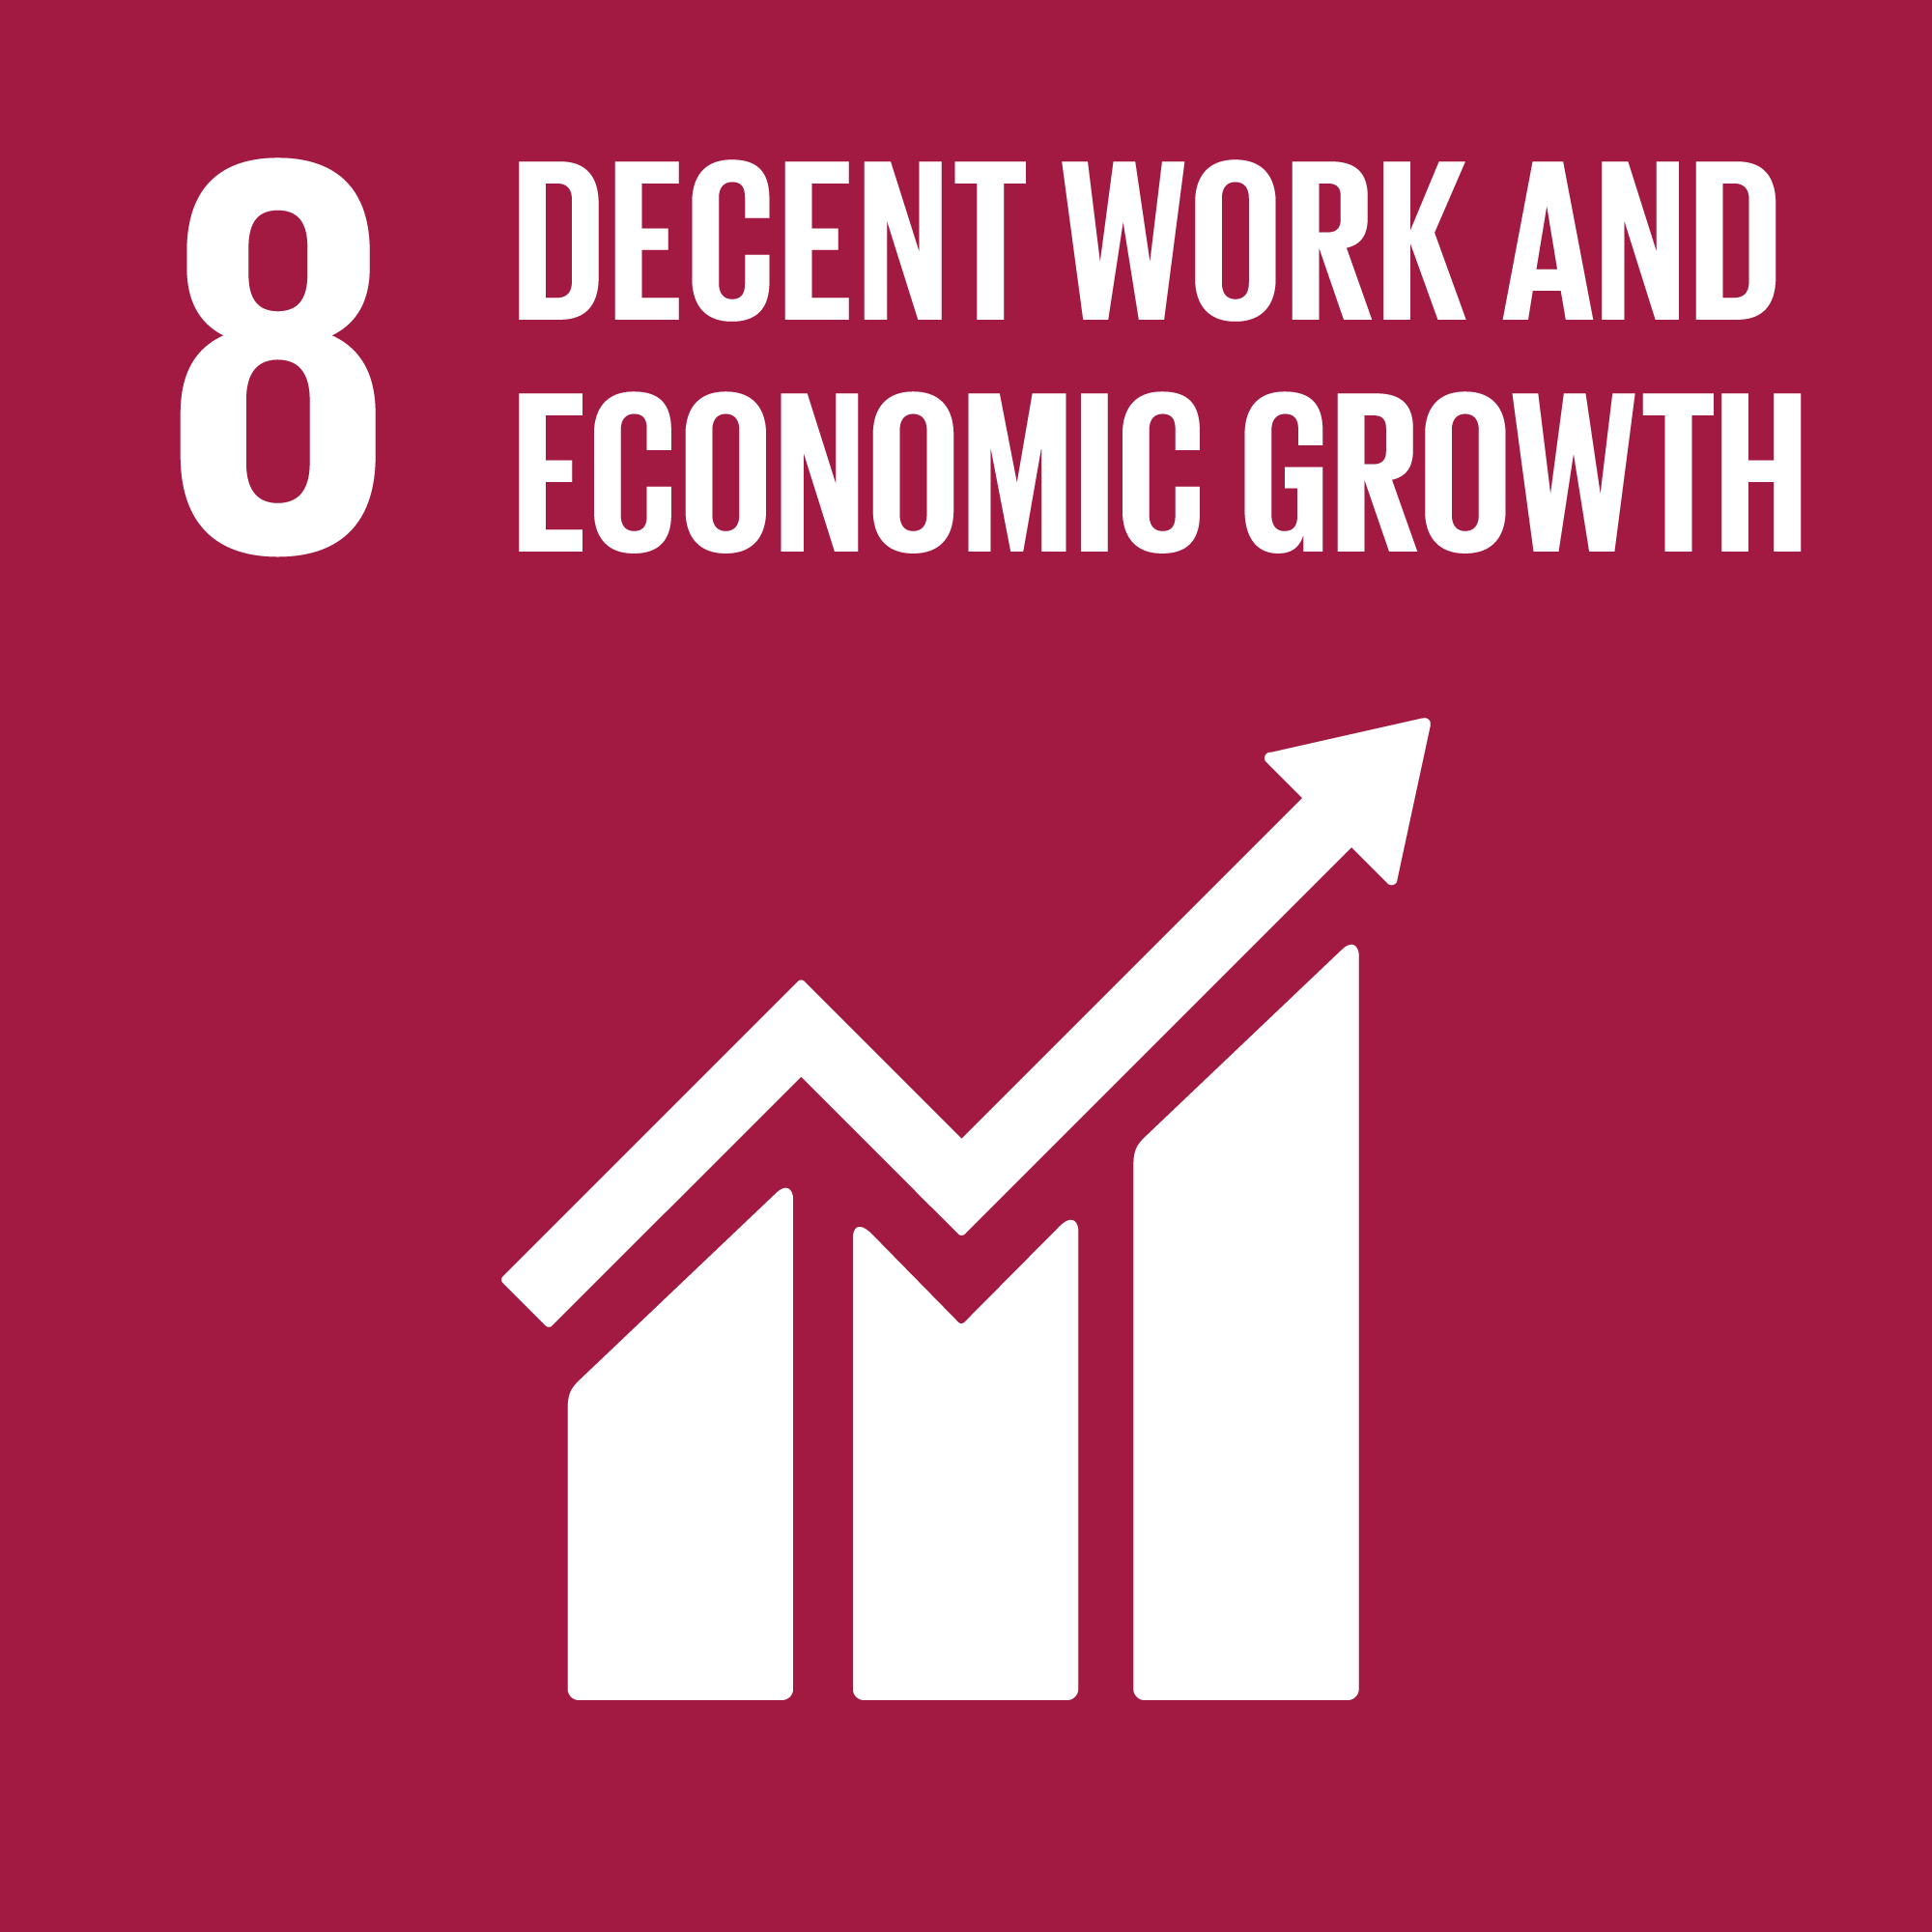 #8 Travail décent et croissance économique